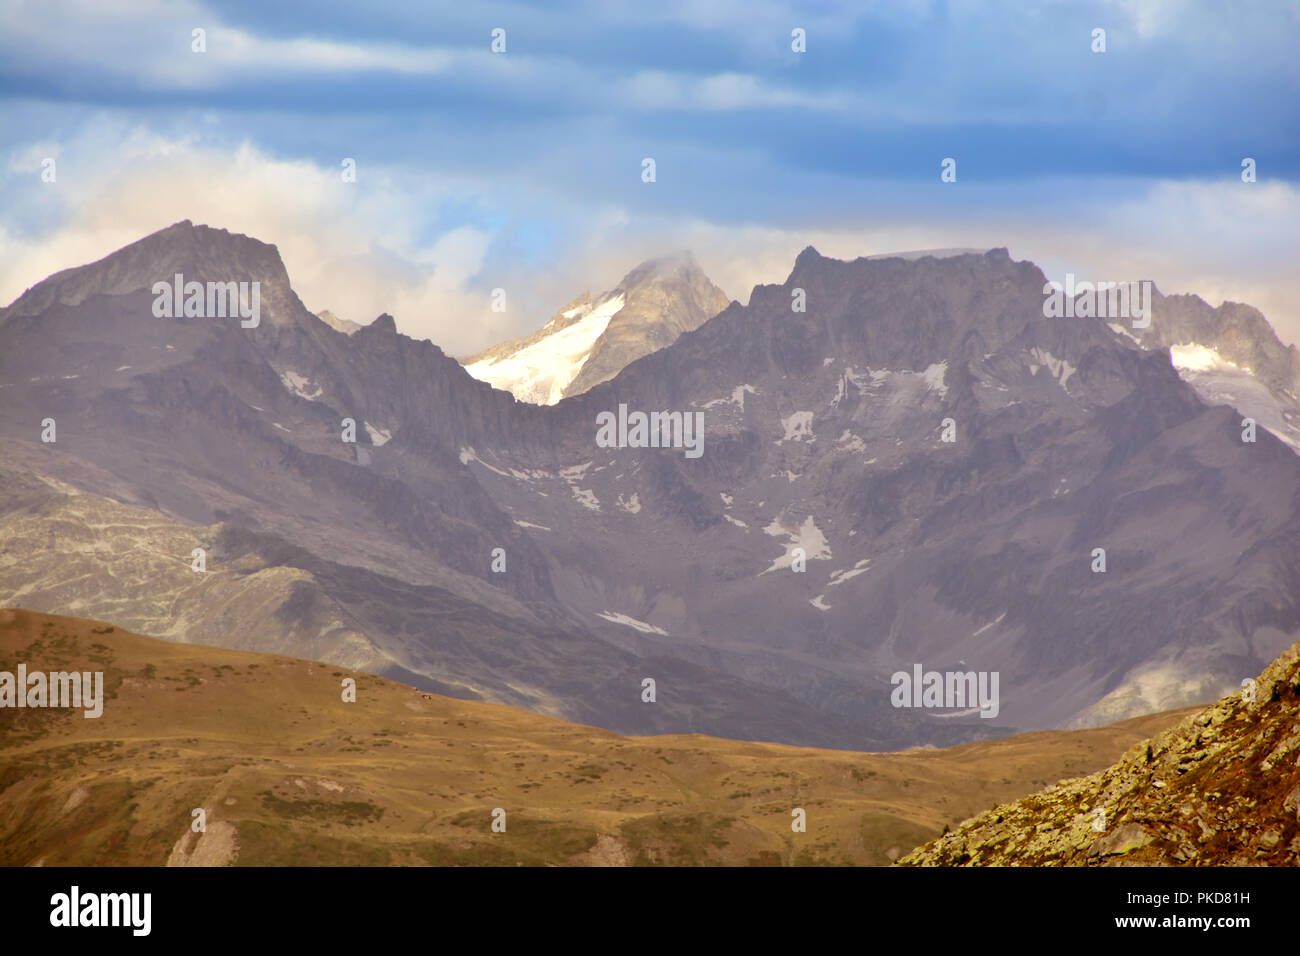 Das lauteraarhorn in den Berner Alpen gesehen von Süden auf der schweizerisch-italienischen Grenze unter schwerem Himmel Stockfoto